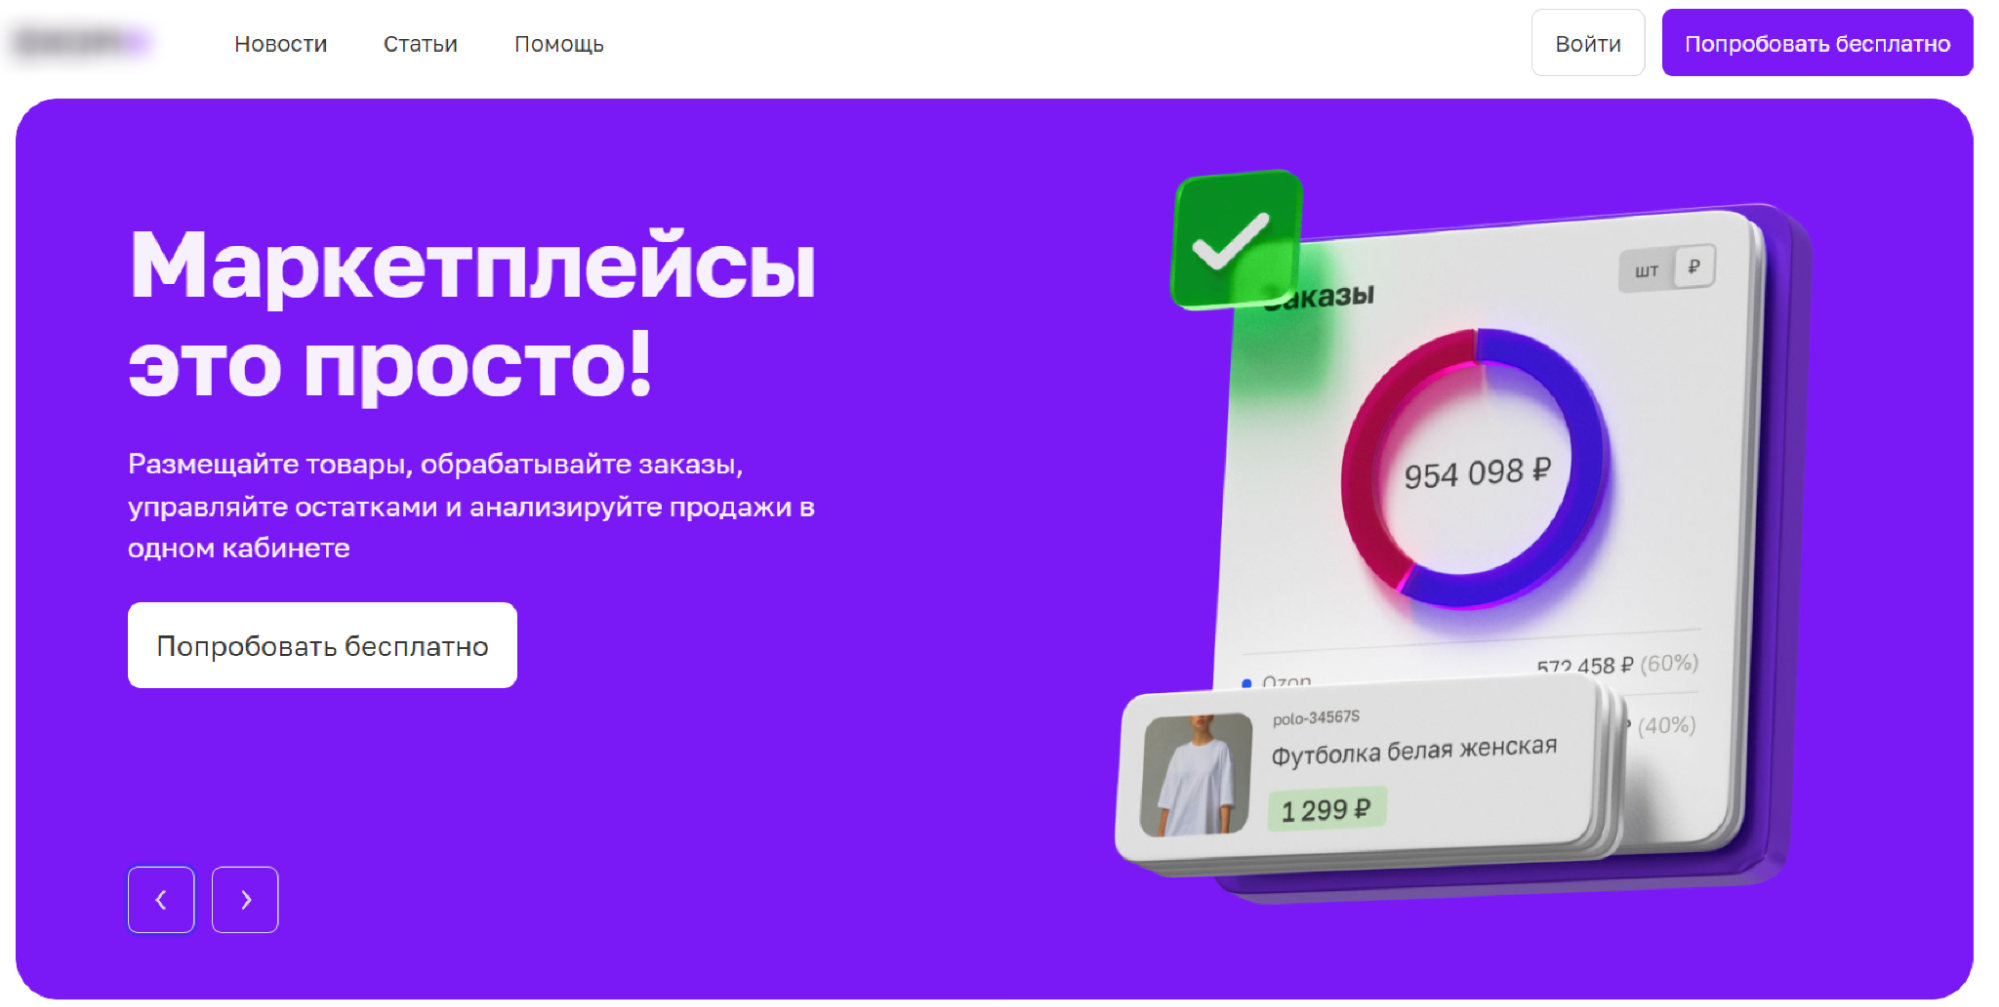  ЕКОМ+ — новый сервис Почты России